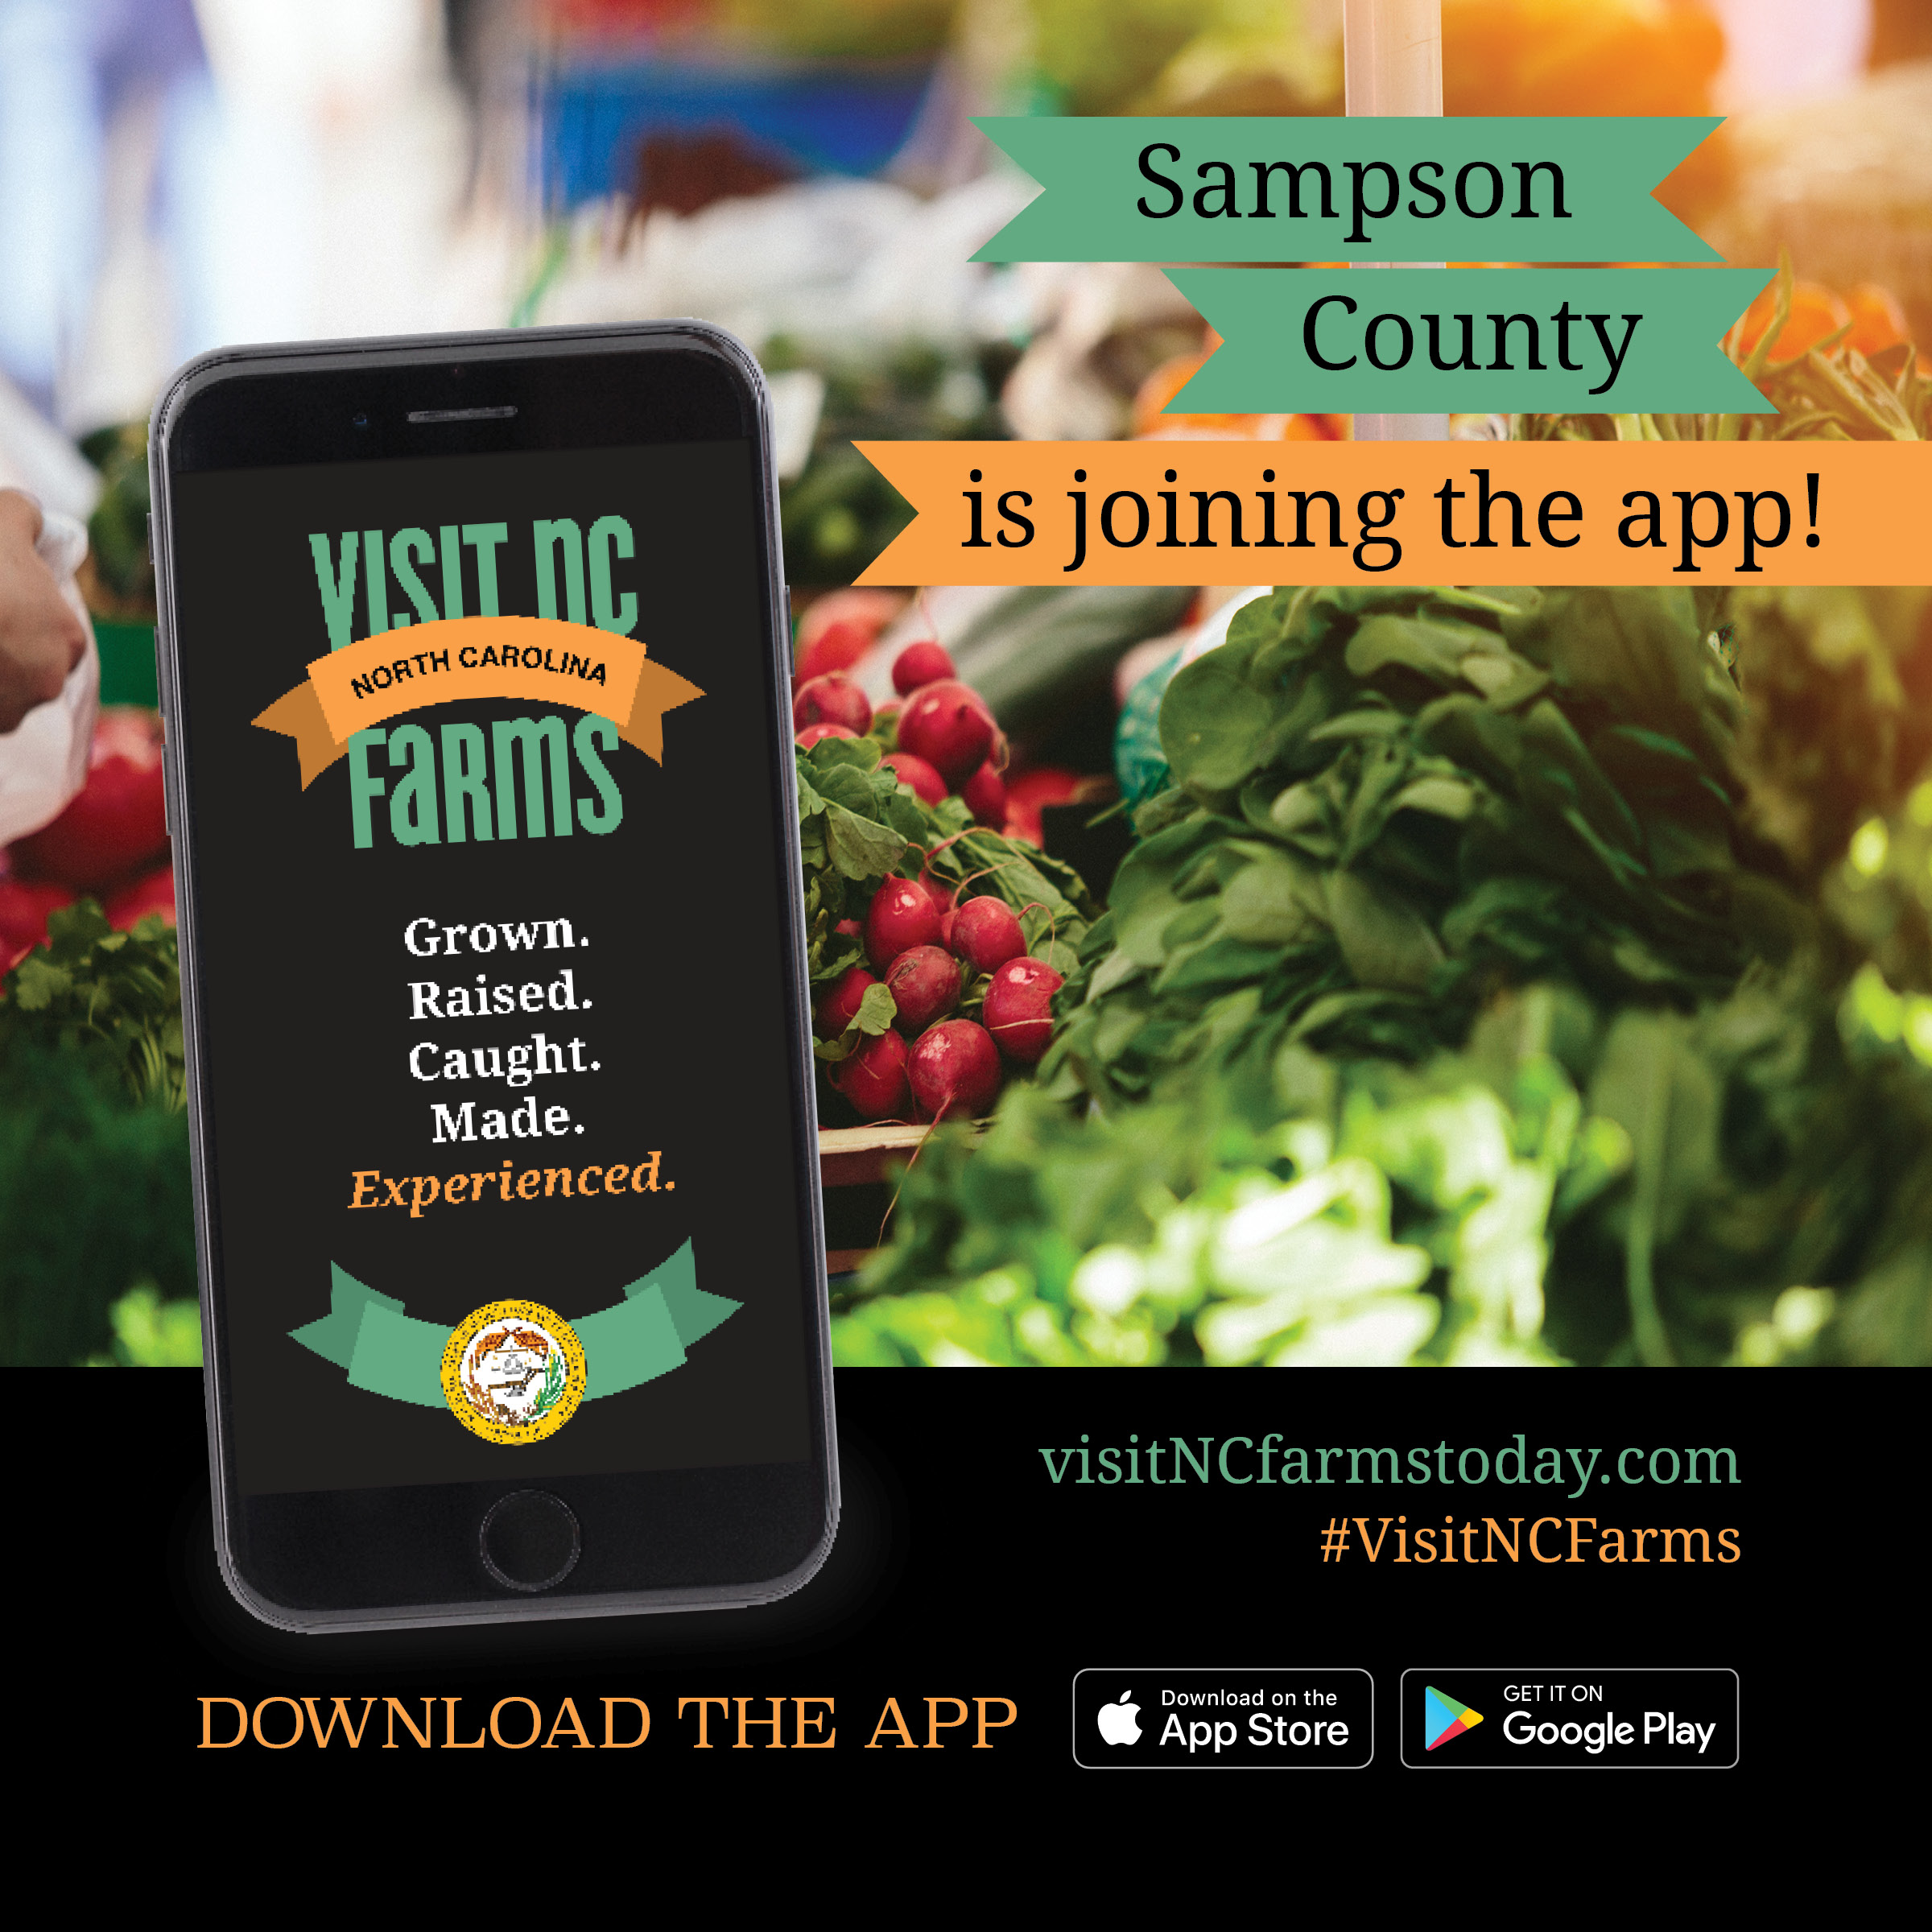 Visit NC Farms app flyer image